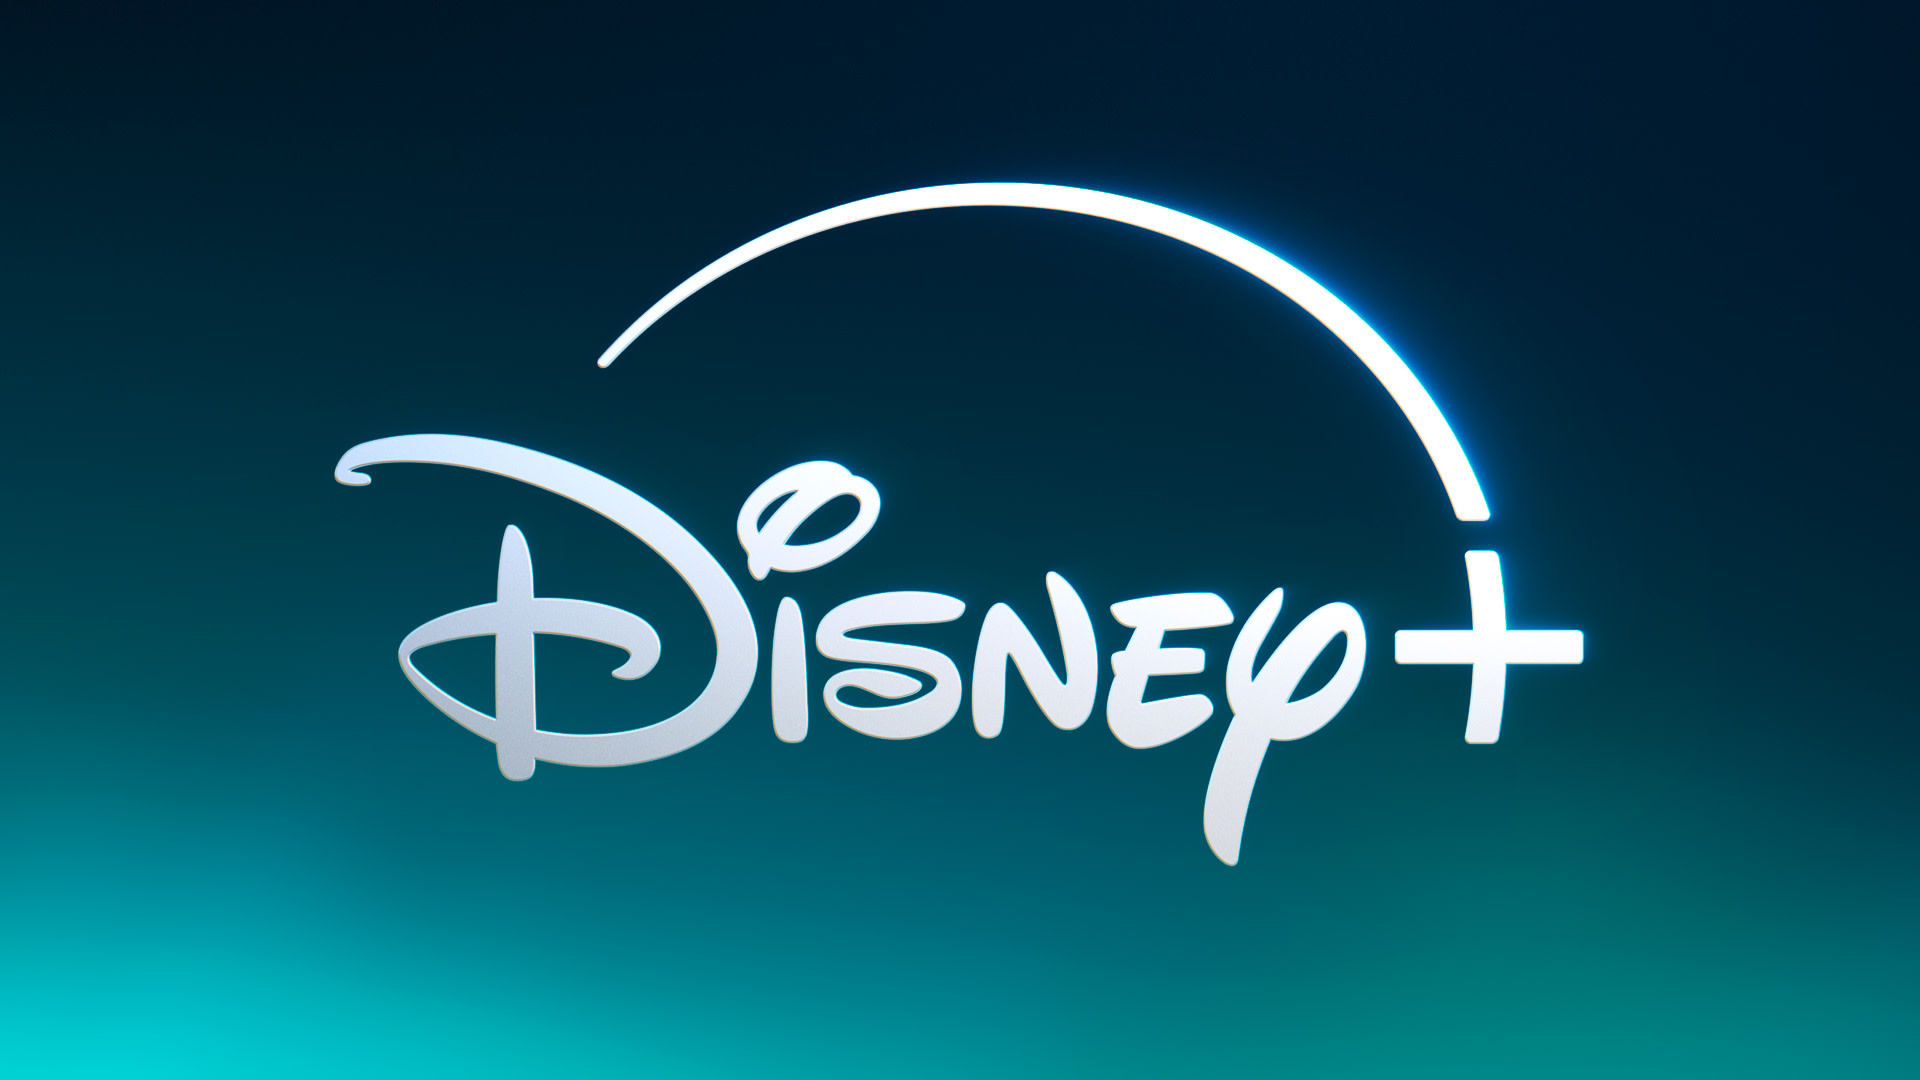 Tego nikt się nie spodziewał - na Disney+ pojawią się zaskakujące treści! Nowy kierunek?